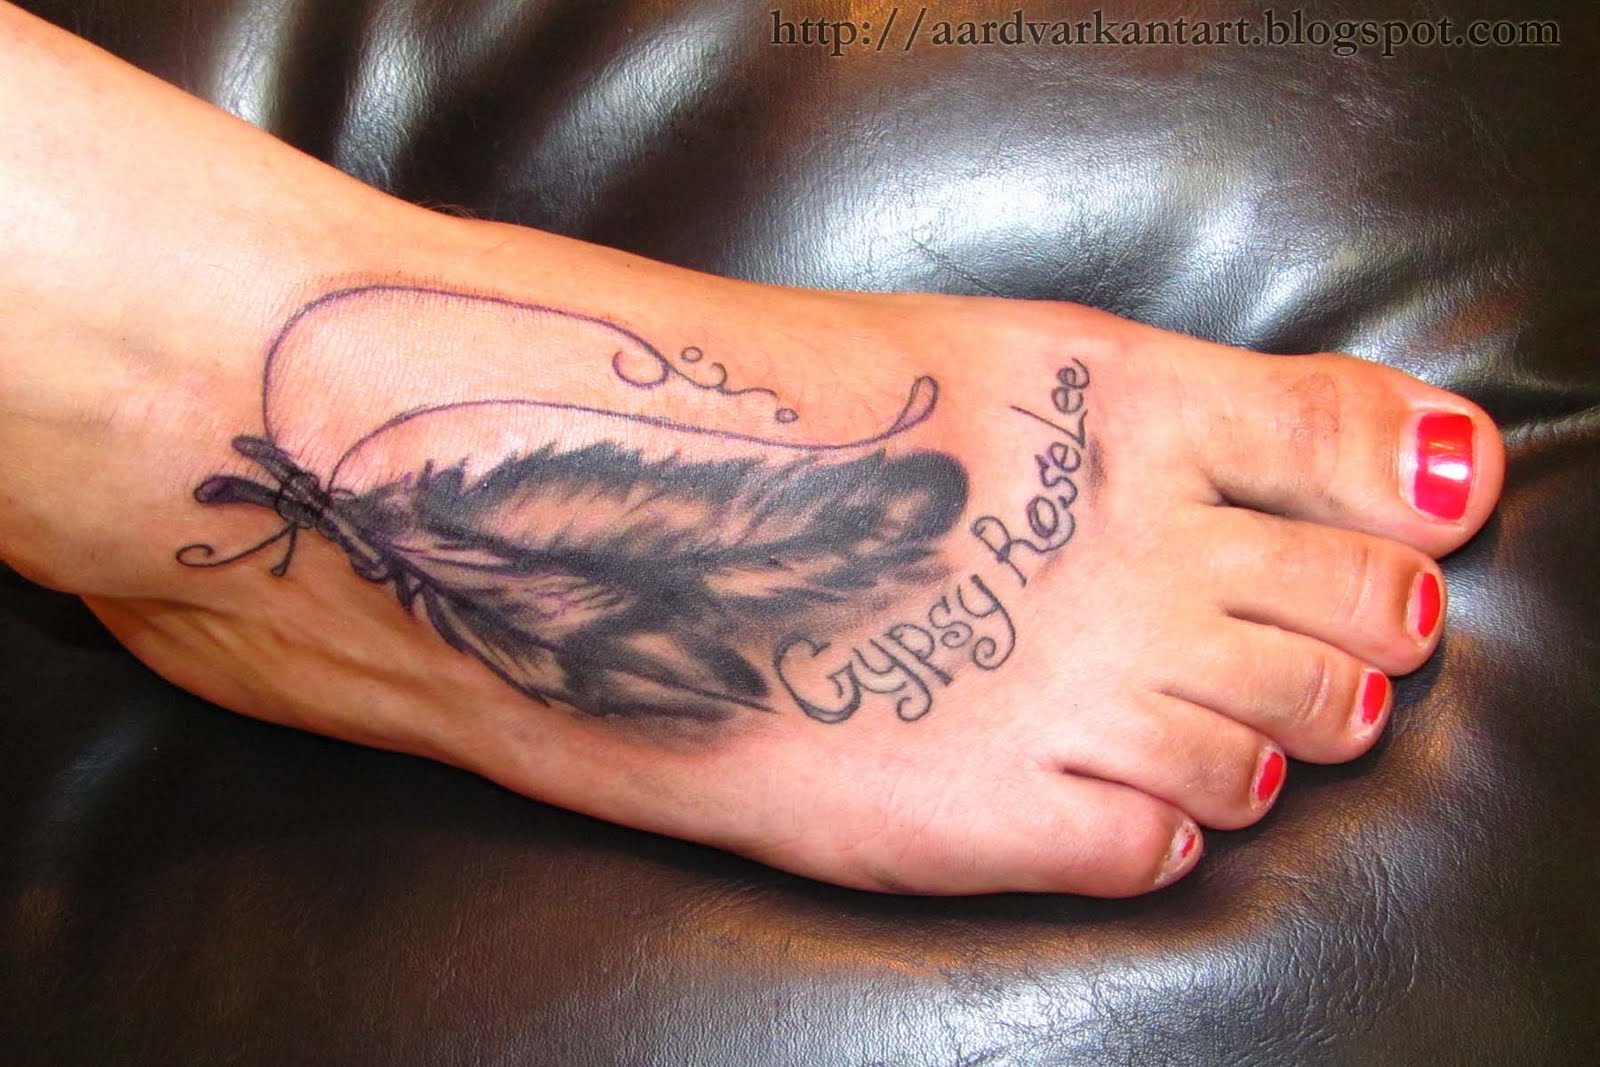 http://3.bp.blogspot.com/-AF4nzv15JpM/Thic1KuQcqI/AAAAAAAAAZc/3sxlebu08W8/s1600/feather+foot+tattoo.jpg